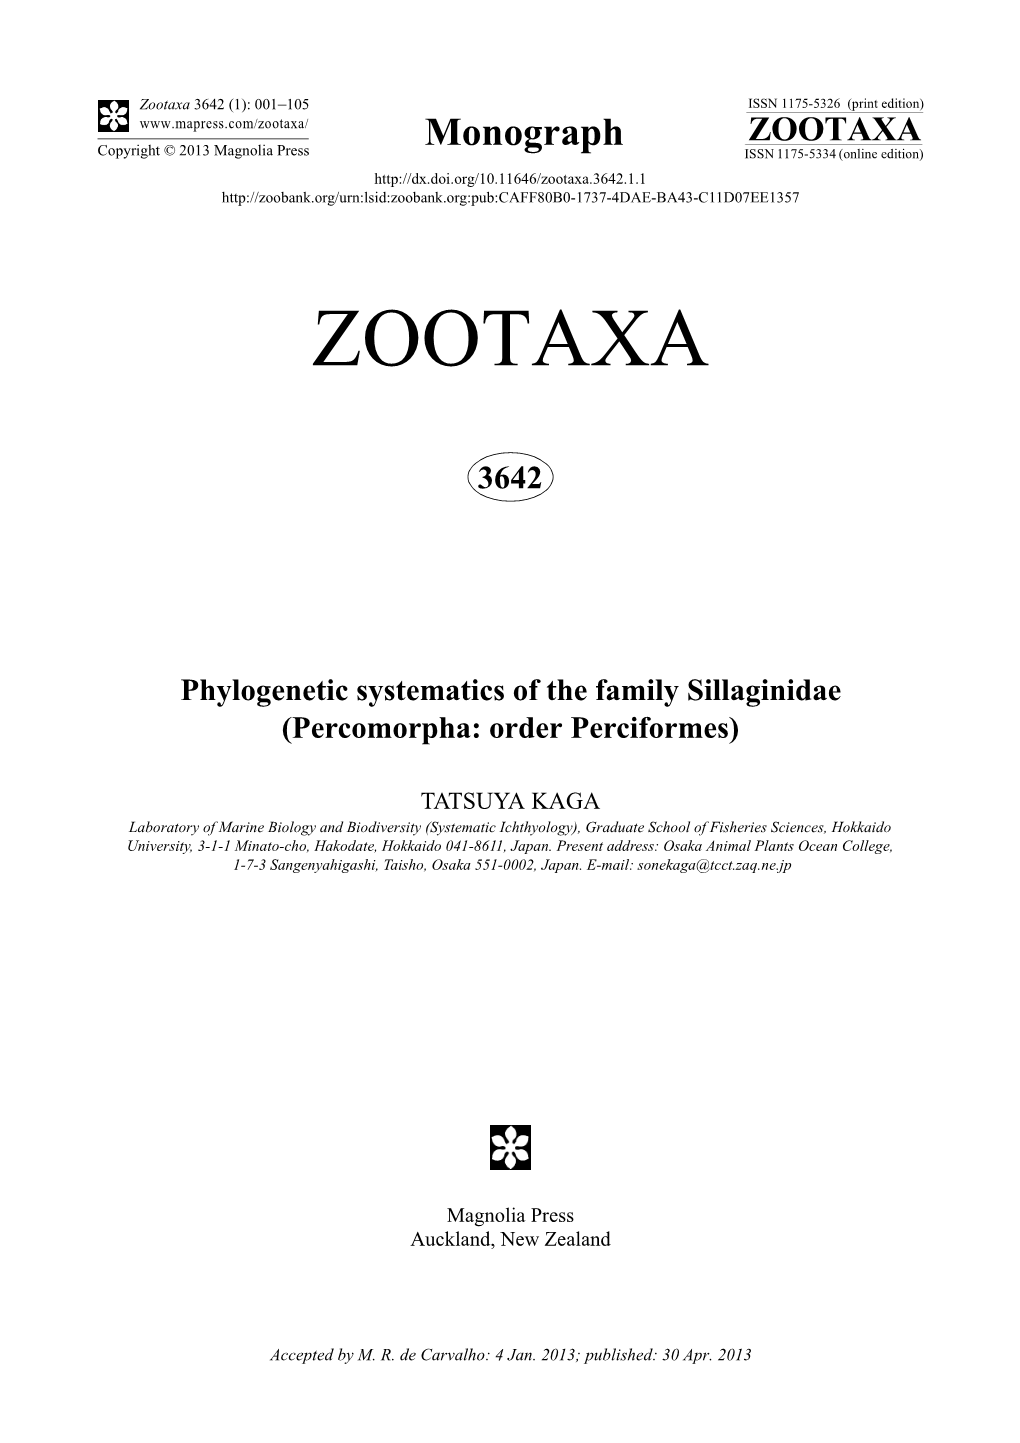 Zootaxa, 3642 (1): 1-105